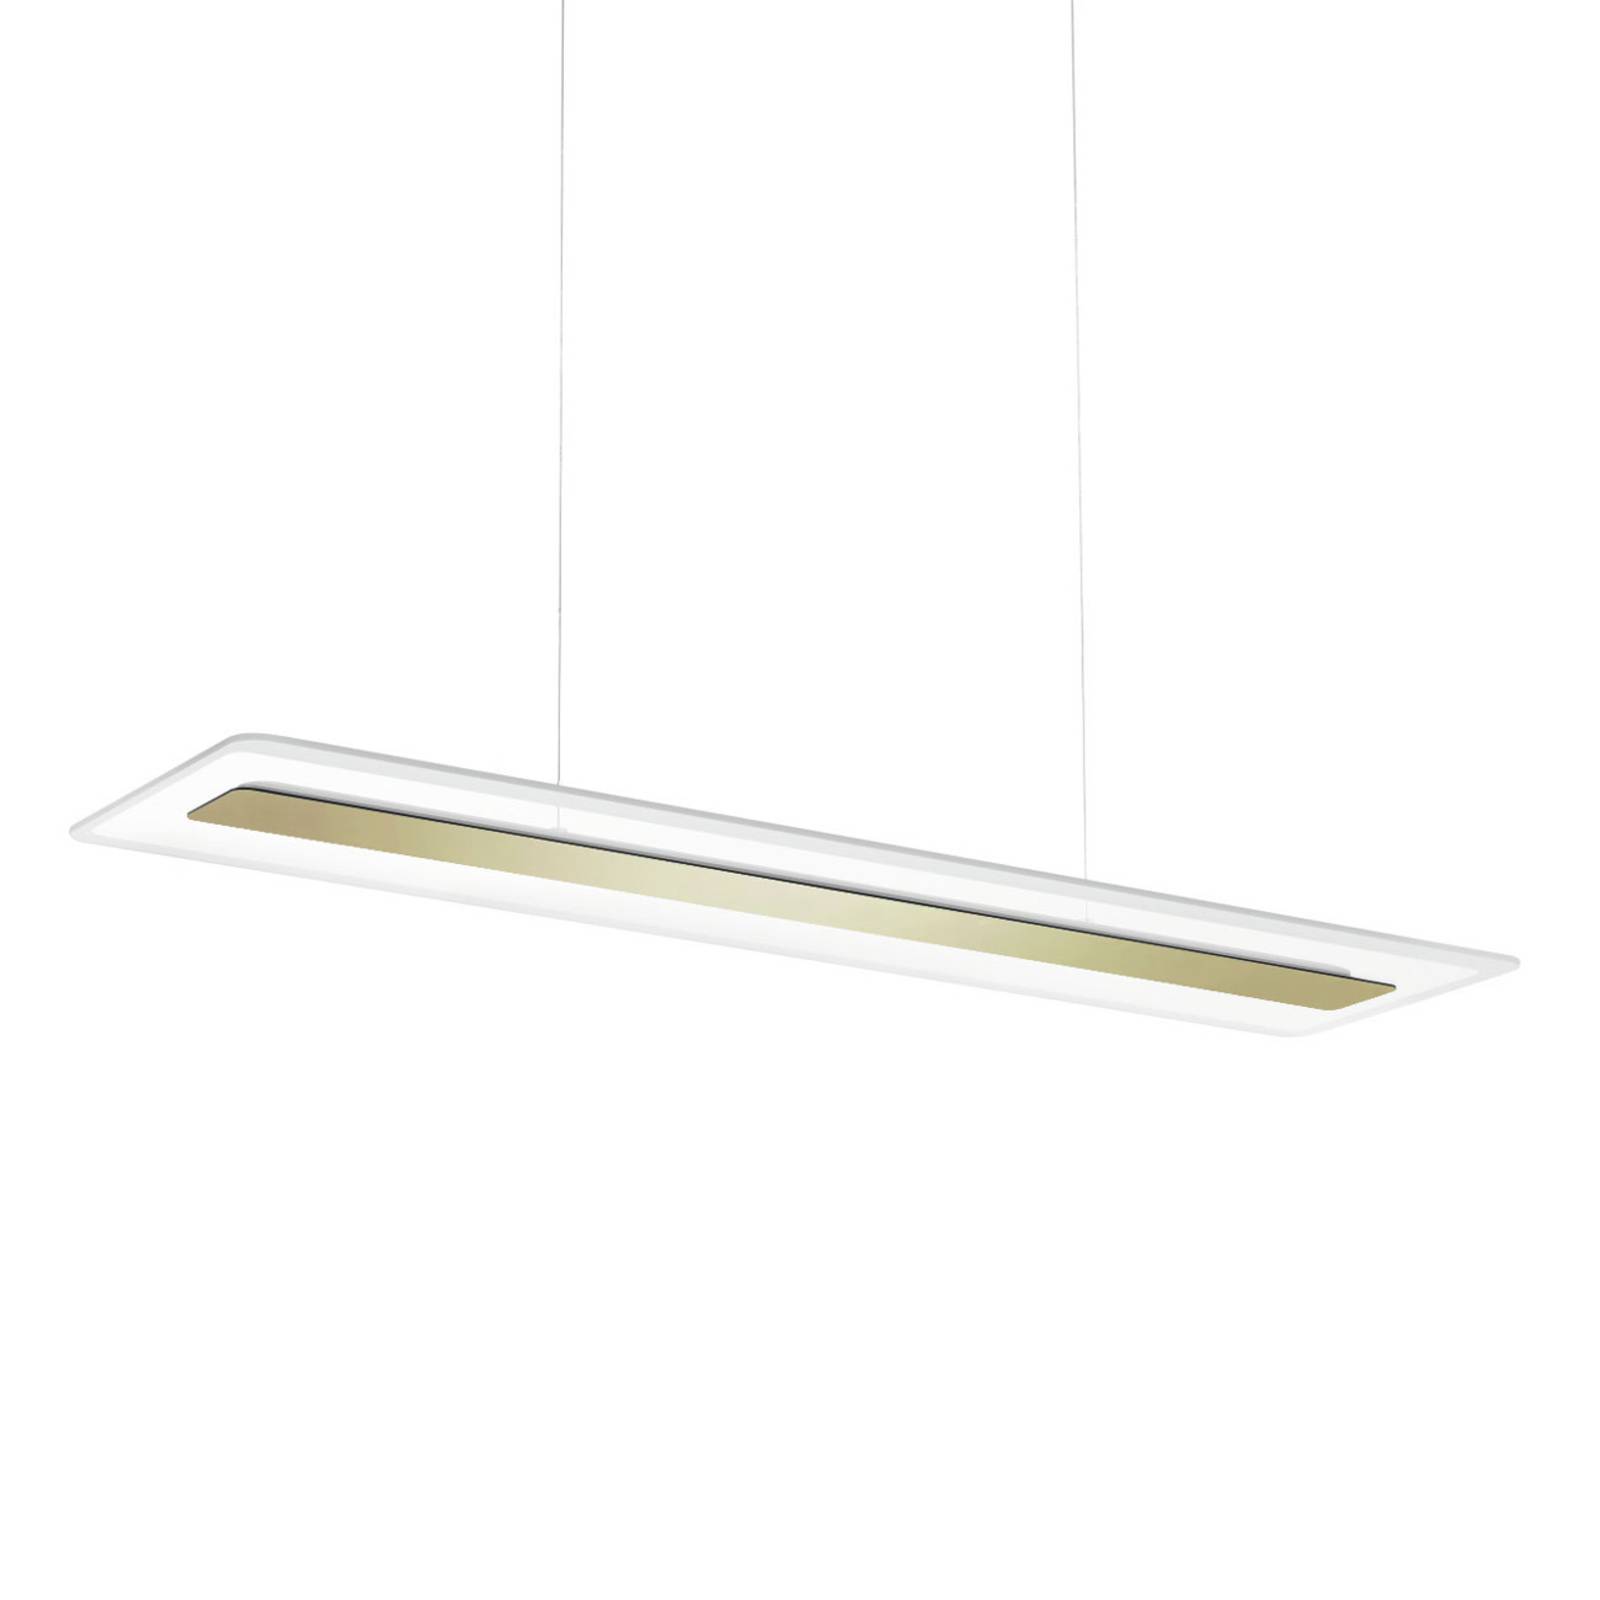 Image of Linea Light Suspension LED Antille verre rectangulaire dorée 8033913149735